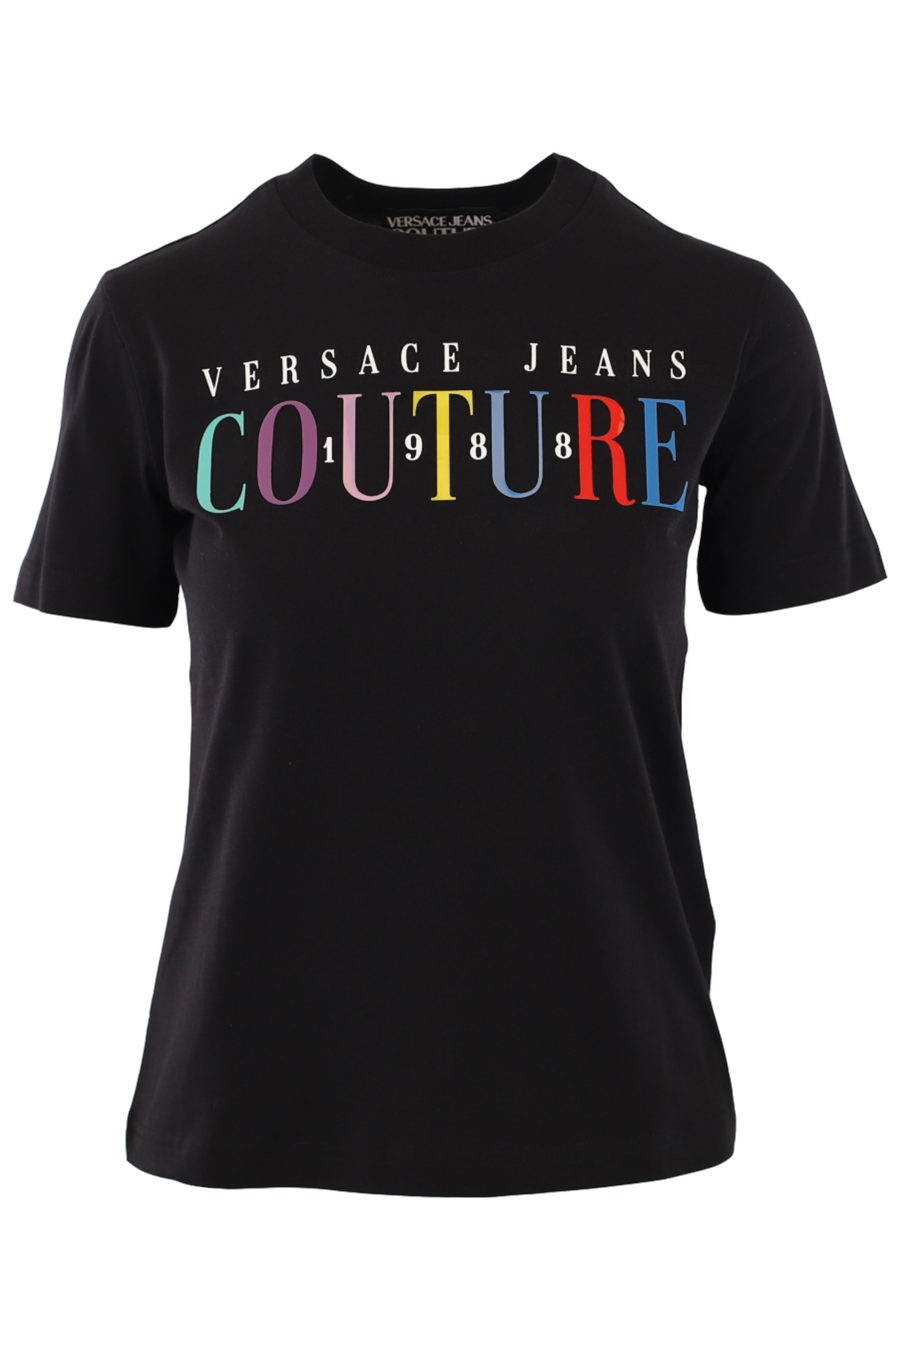 T-shirt noir avec logo multicolore au centre - IMG 0828